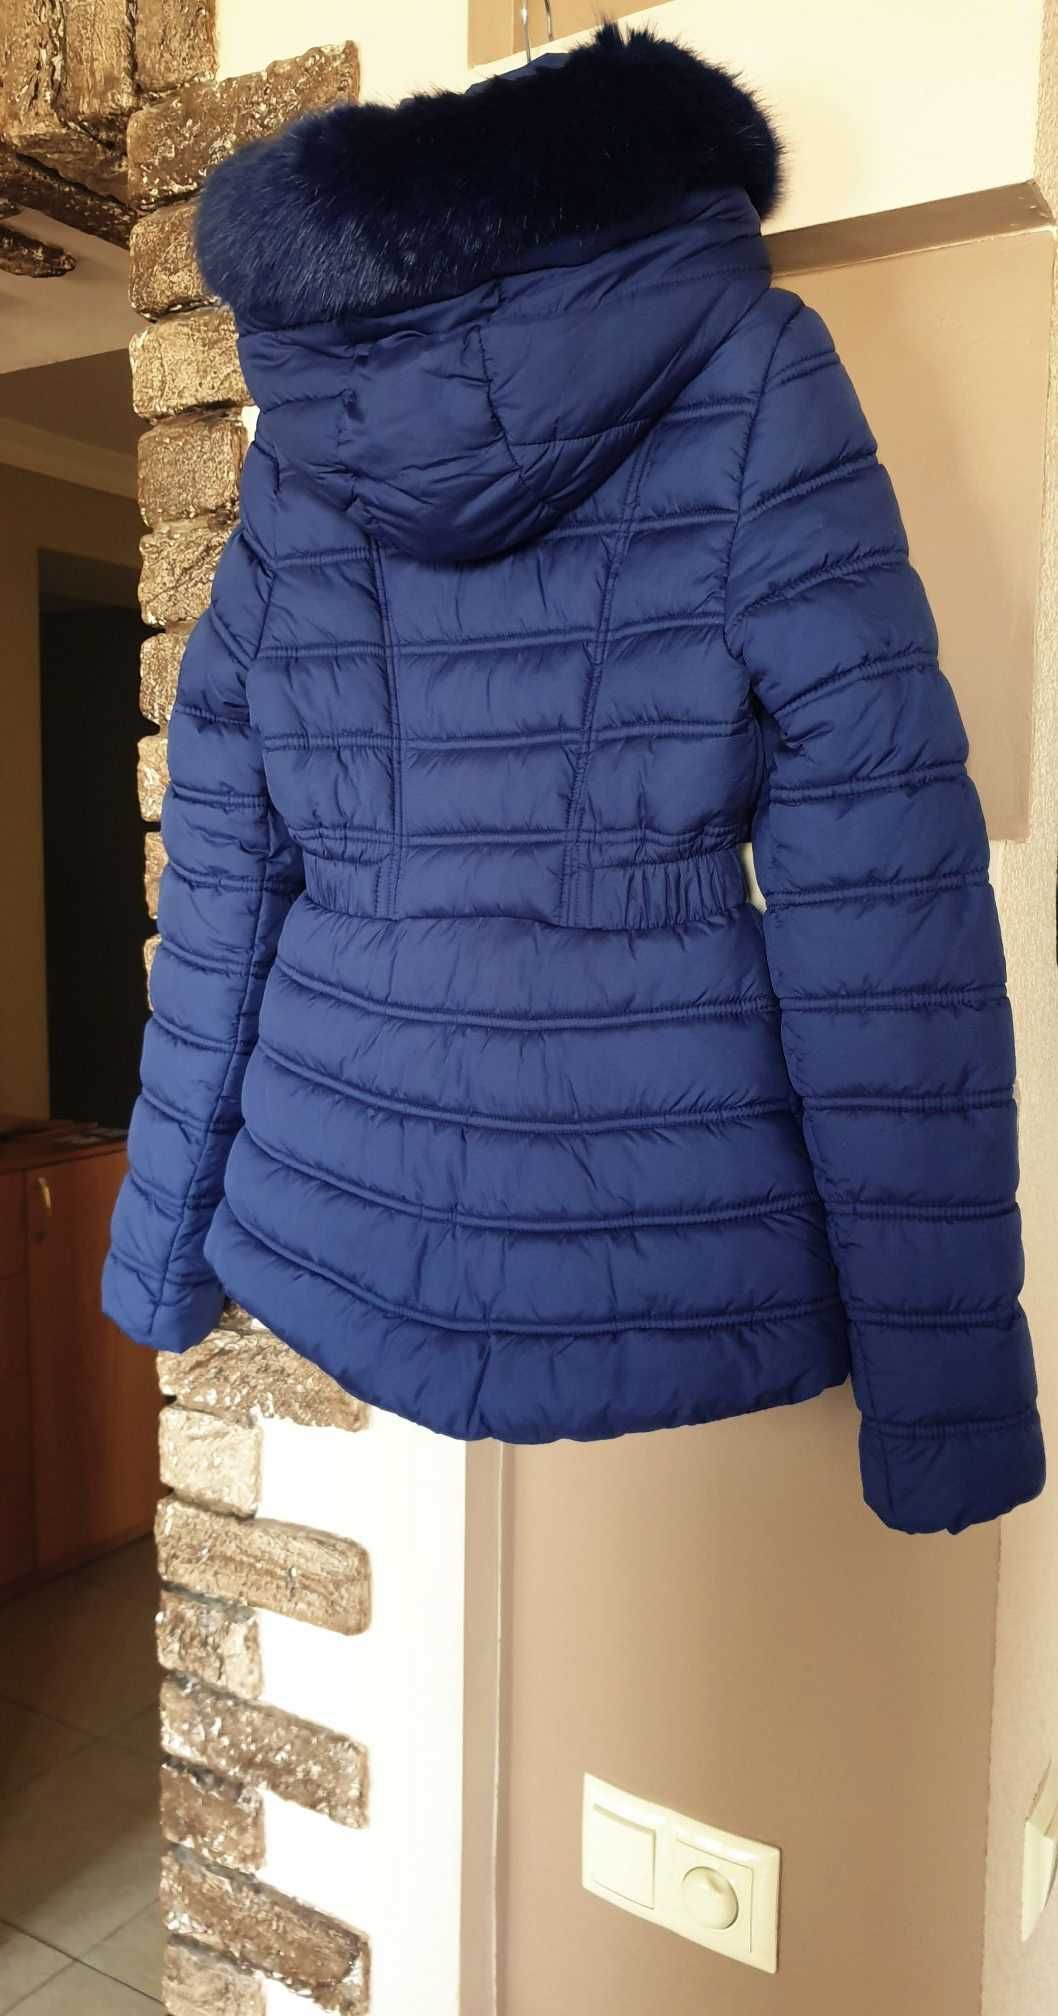 Зимова жіноча куртка Guess. Нова. Оригінал! Розмір Xs / S. З капюшоном